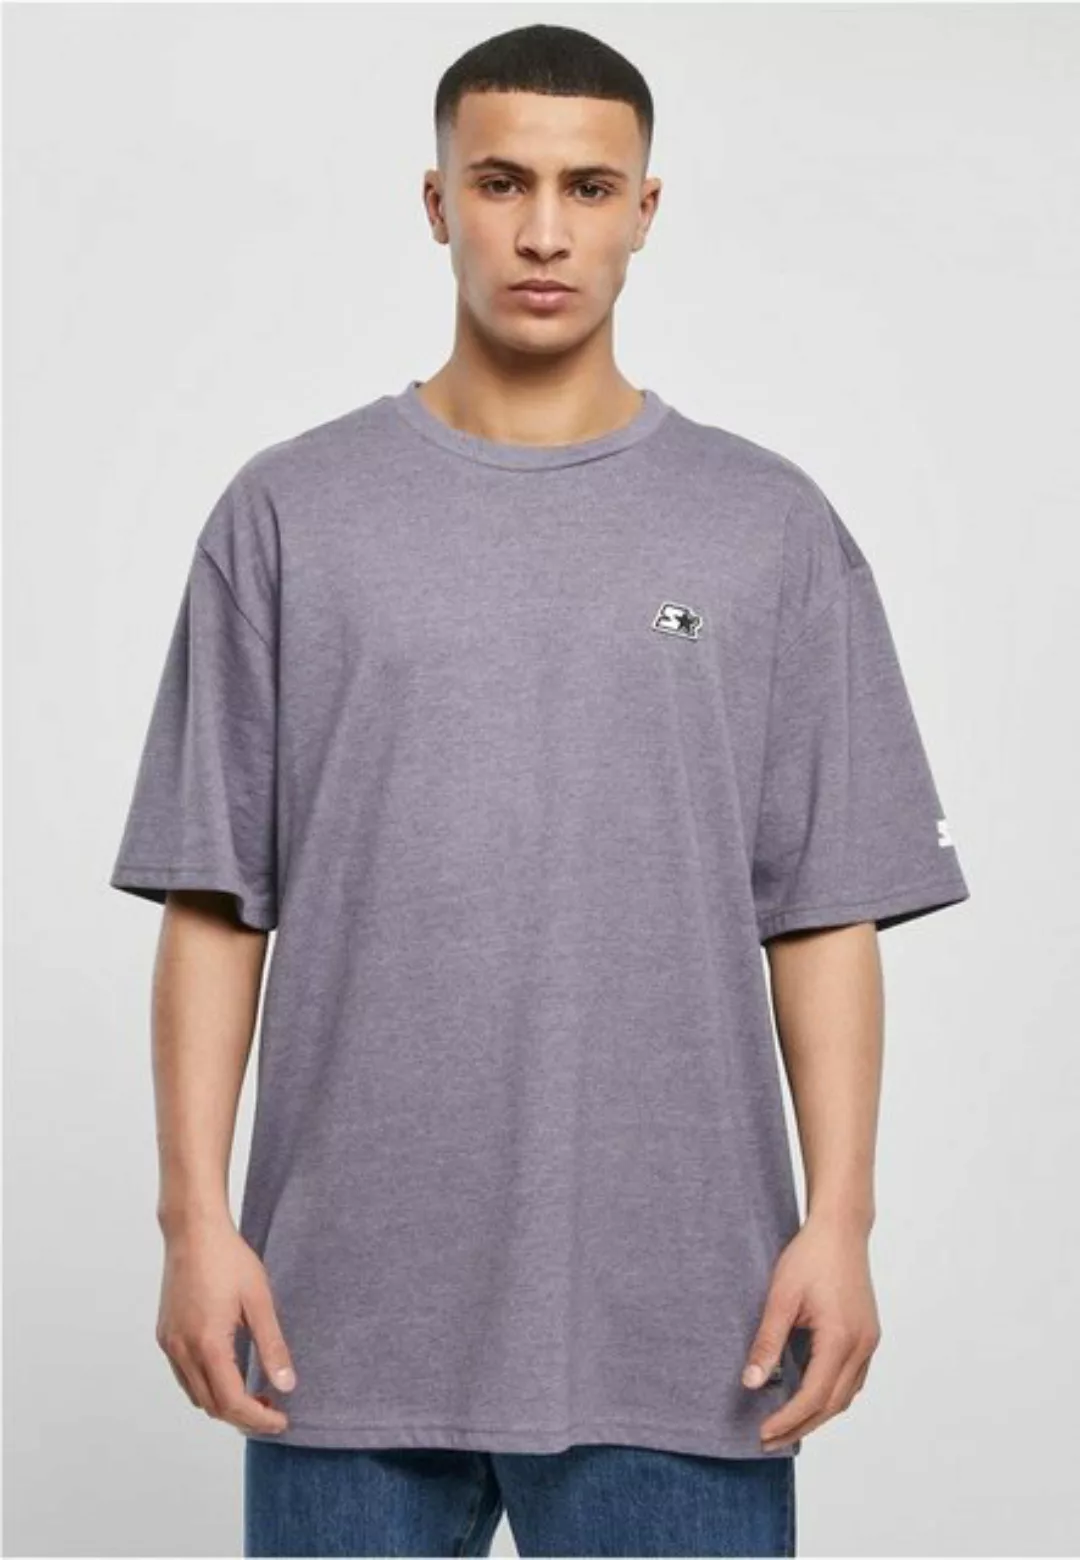 Starter Black Label T-Shirt günstig online kaufen